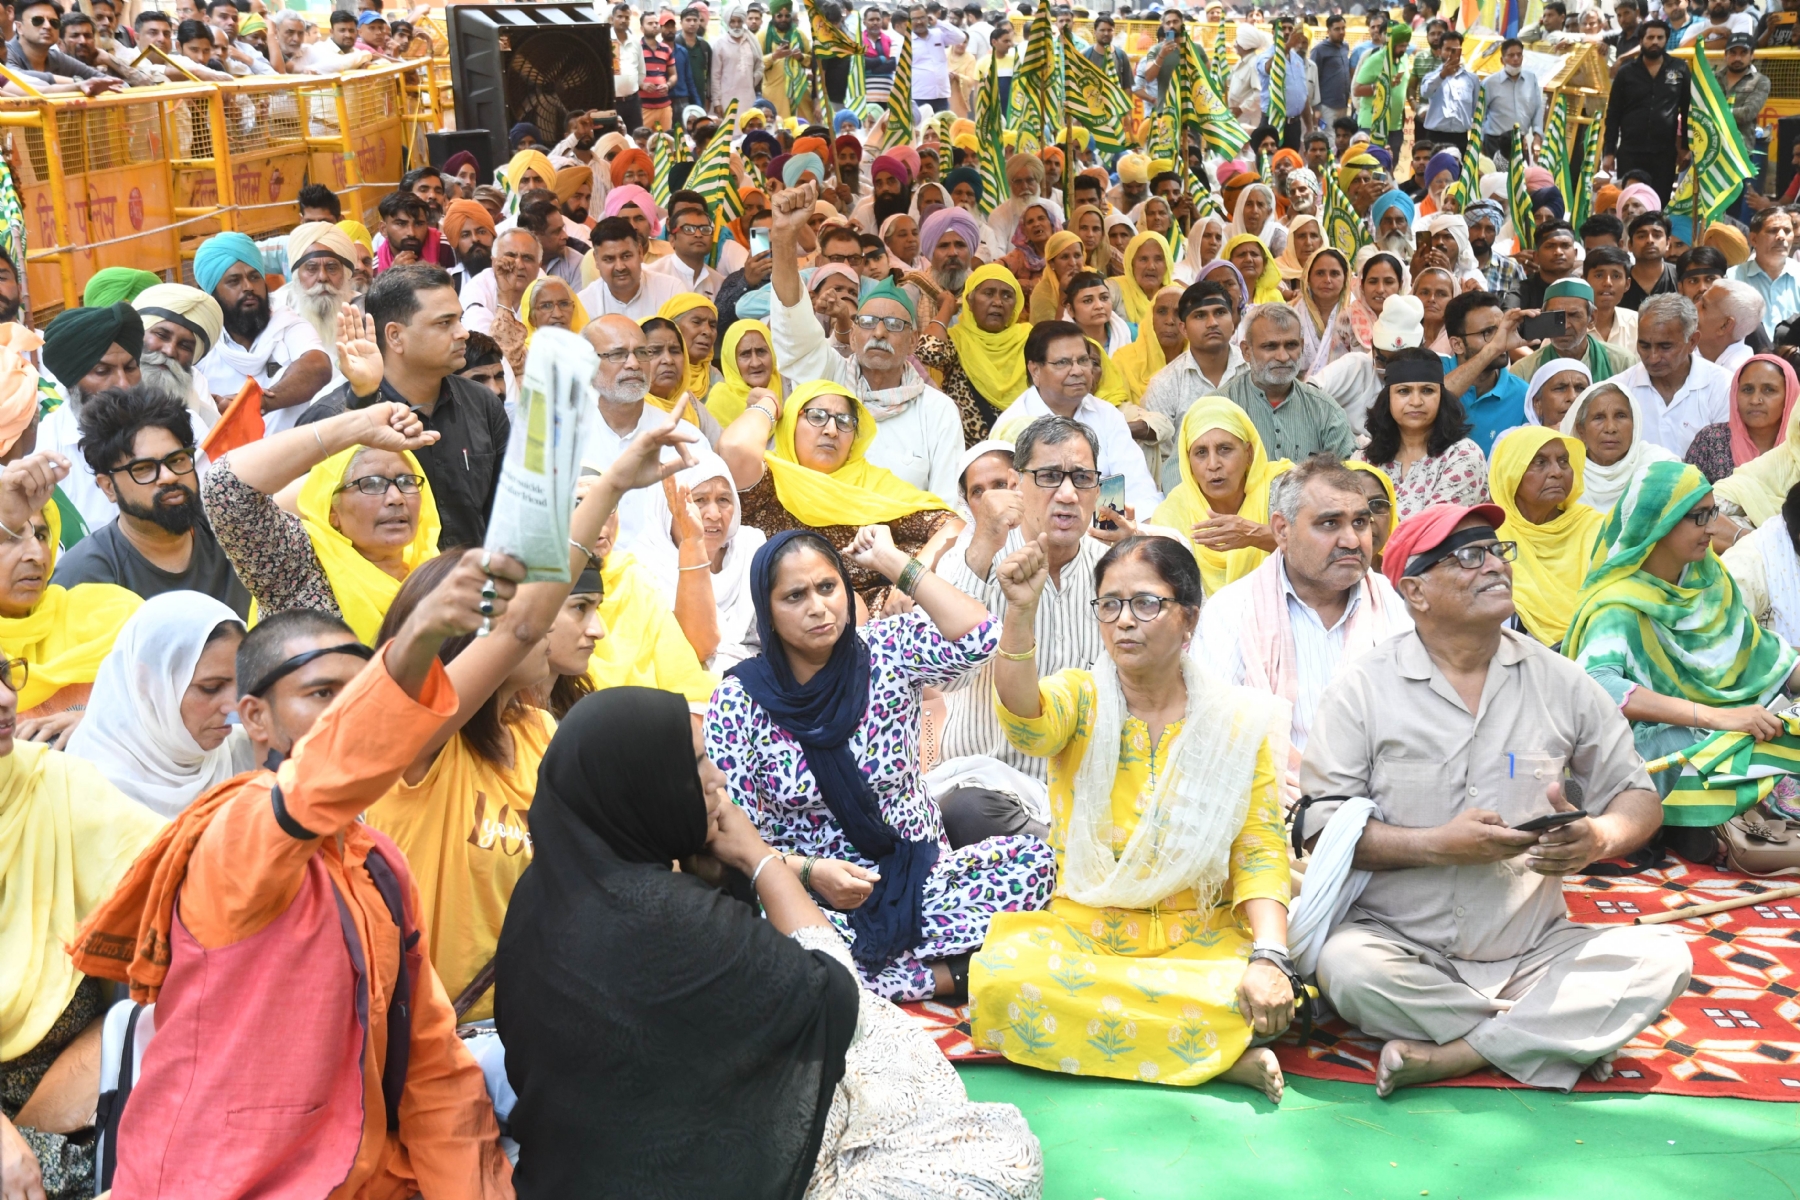 नई दिल्ली में गुरुवार 11 मई को जंतर मंतर पर पहलवान बजरंग पुनिया, विनेश फोगट और साक्षी मलिक ने रेसलिंग फेडरेशन ऑफ प्रमुख बृज भूषण शरण सिंह के विरोध प्रदर्शन के दौरान काली पट्टी बांधी